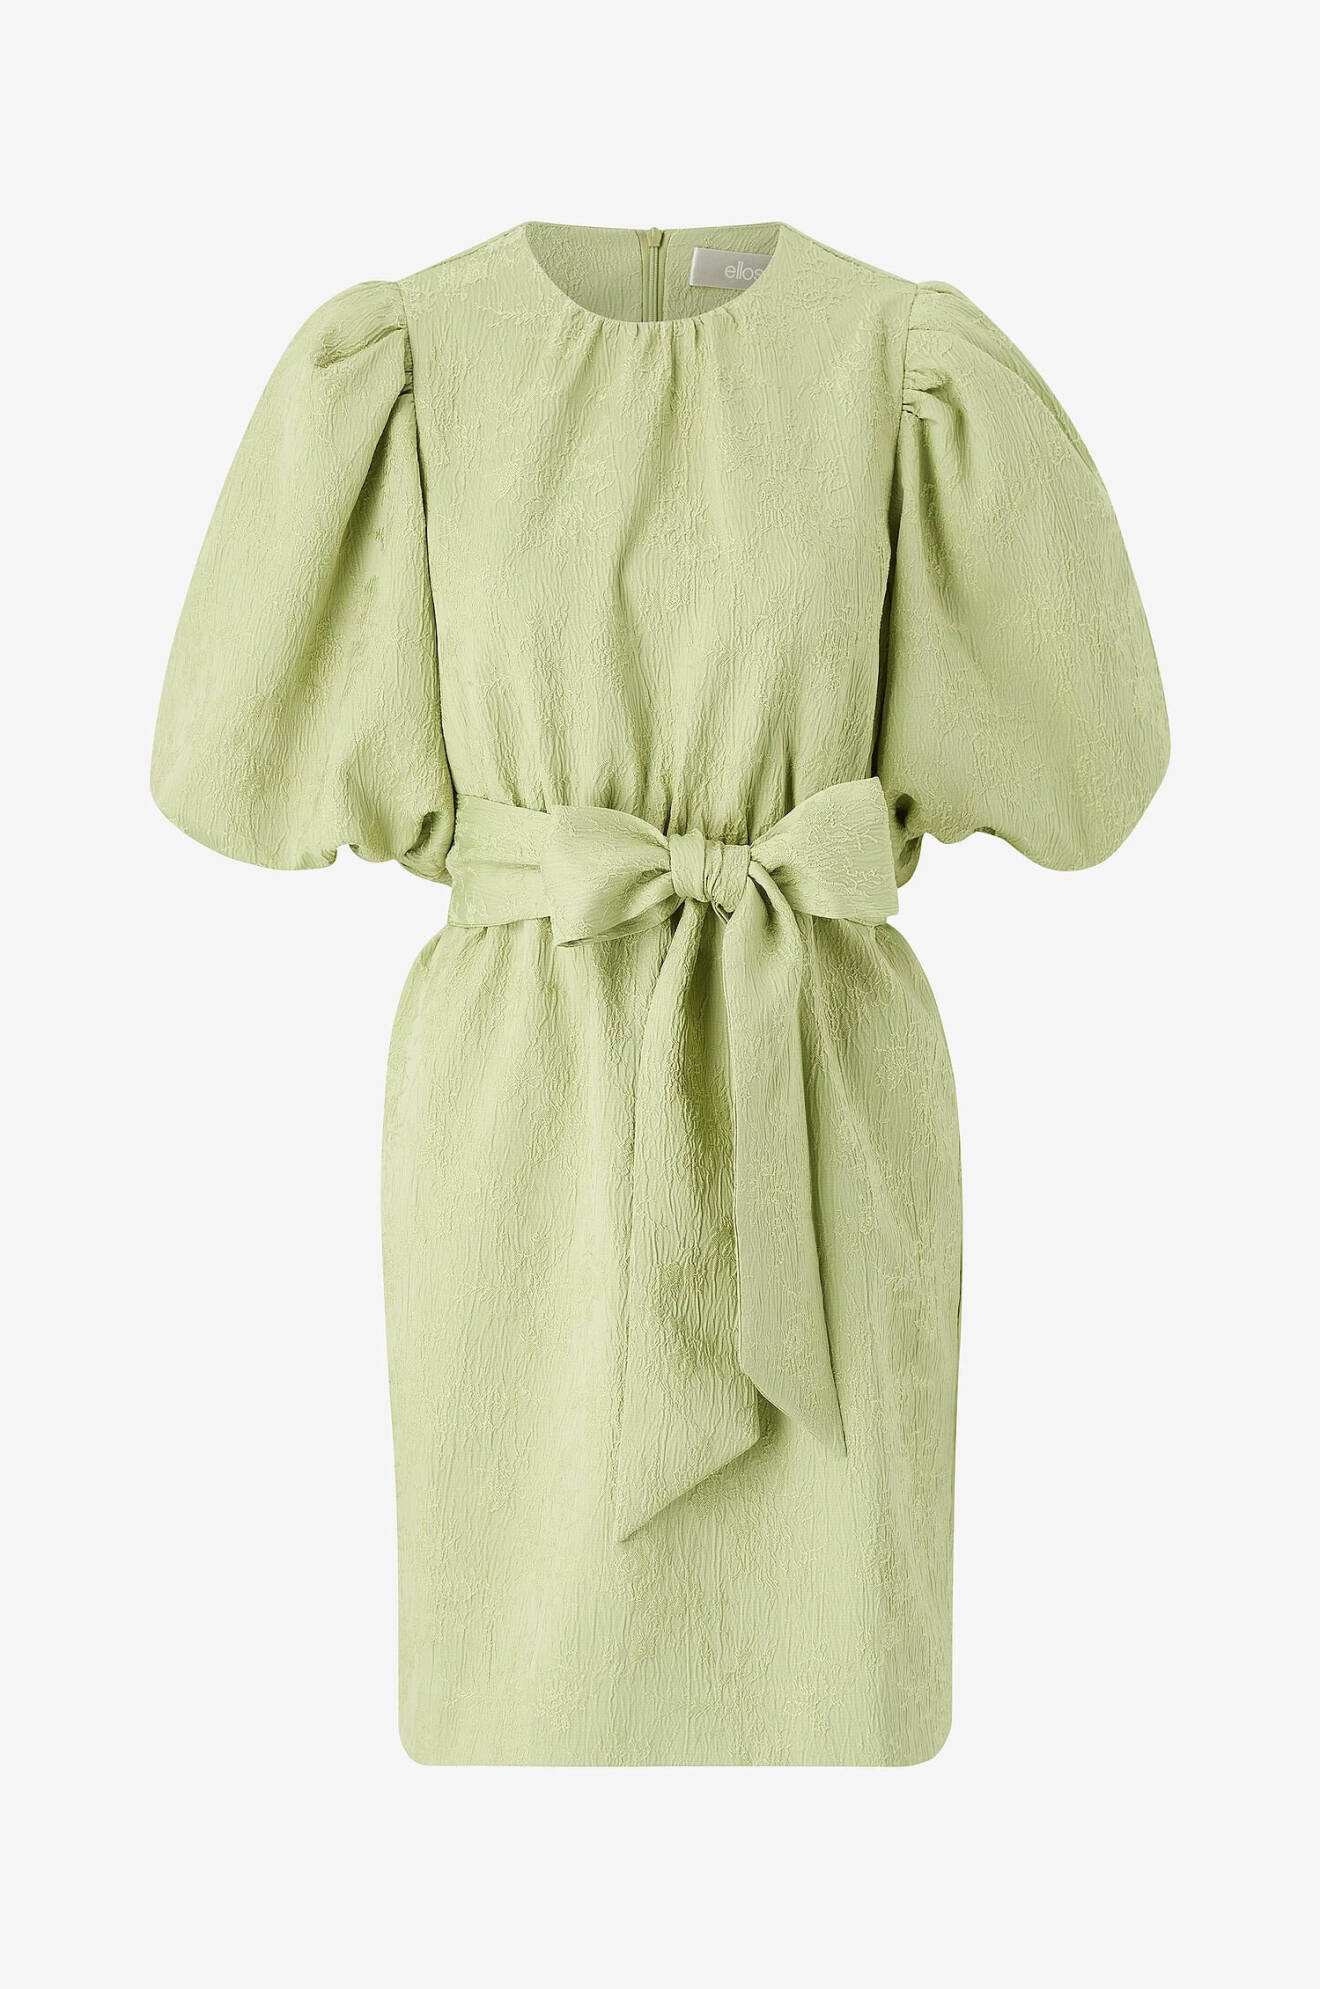 Grön klänning med puffärmar dam sommarmode